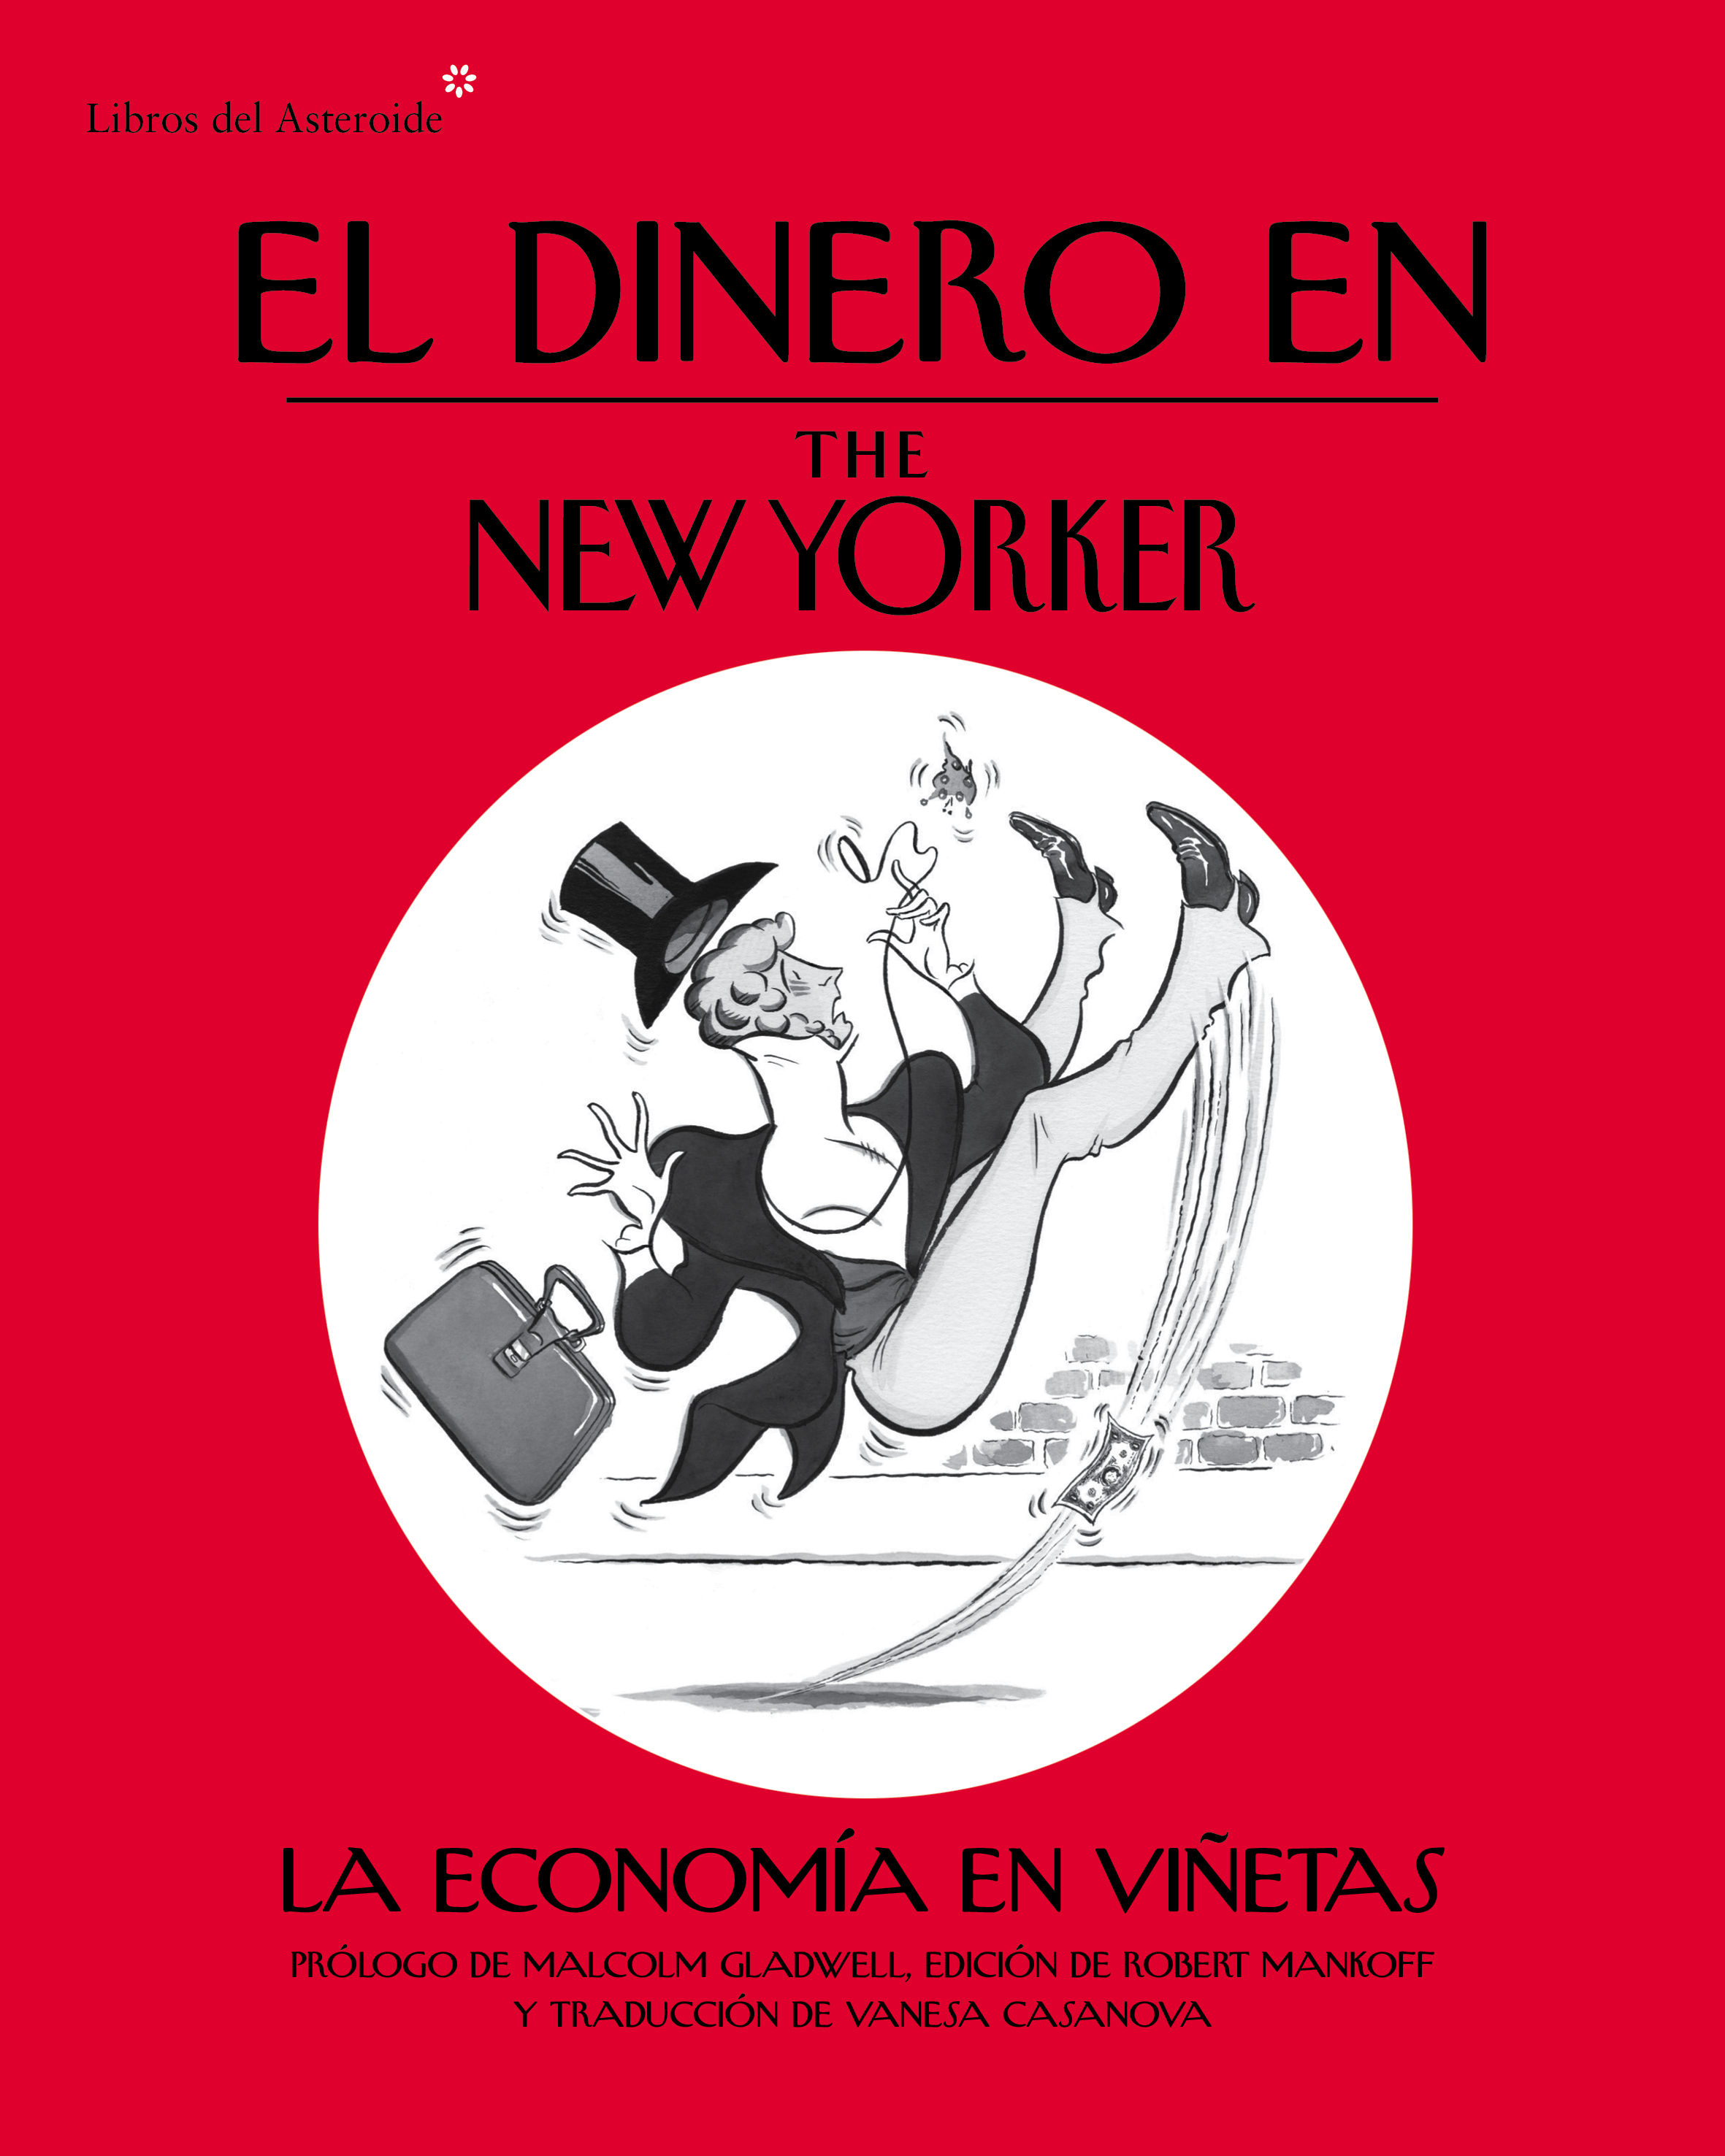 EL DINERO EN THE NEW YORKER